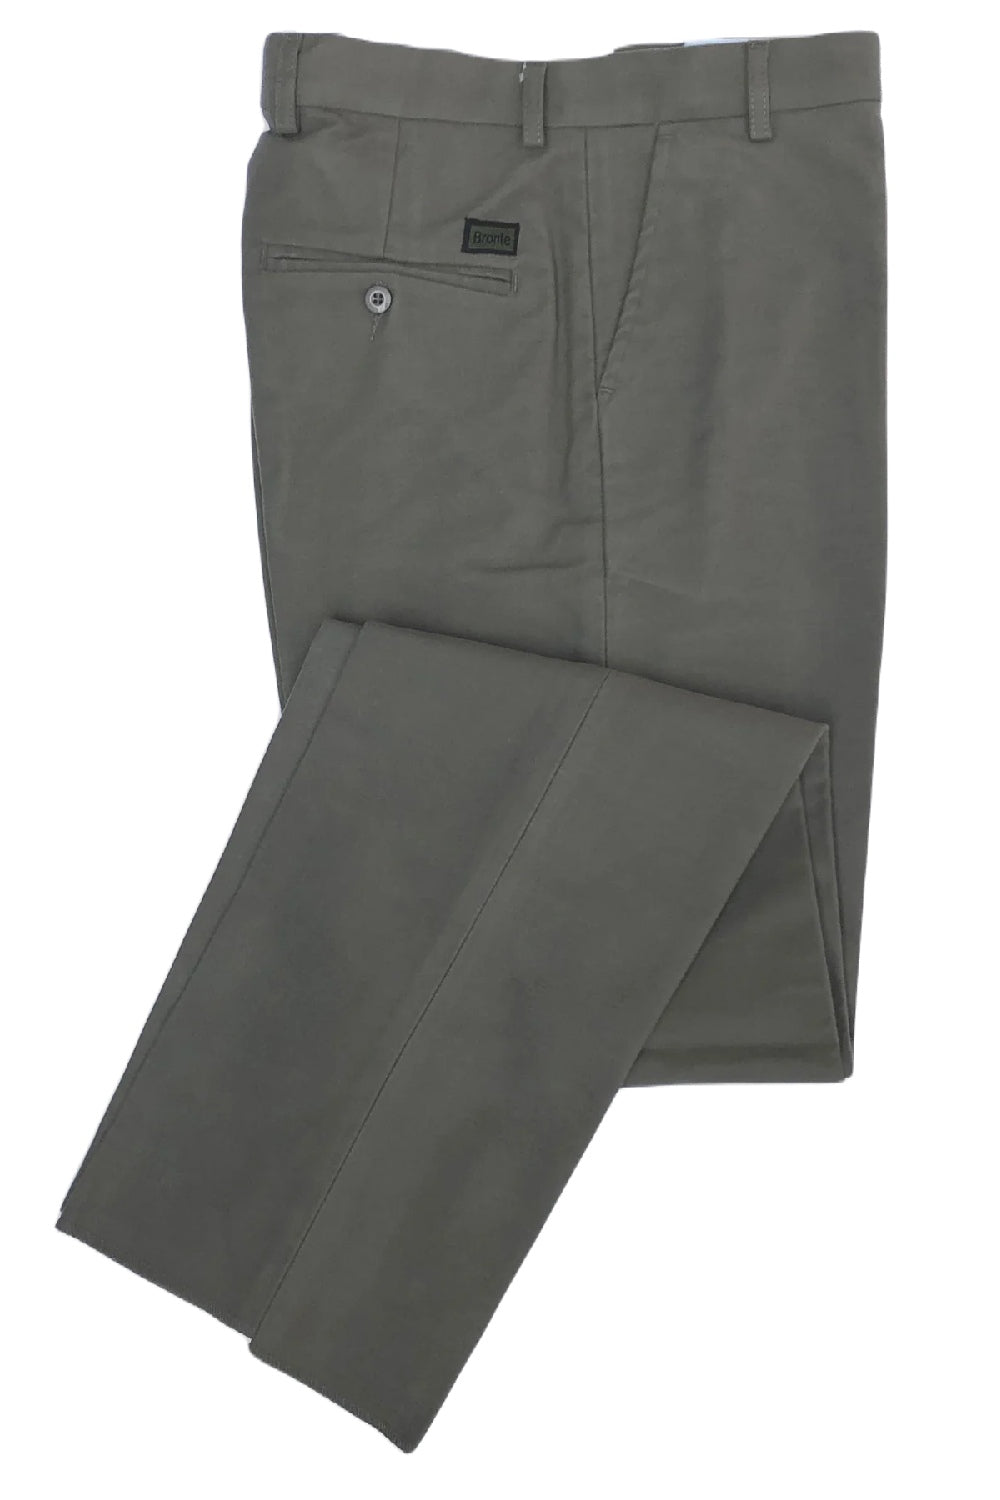 Trousers army BW MOLESKIN original oliv grey